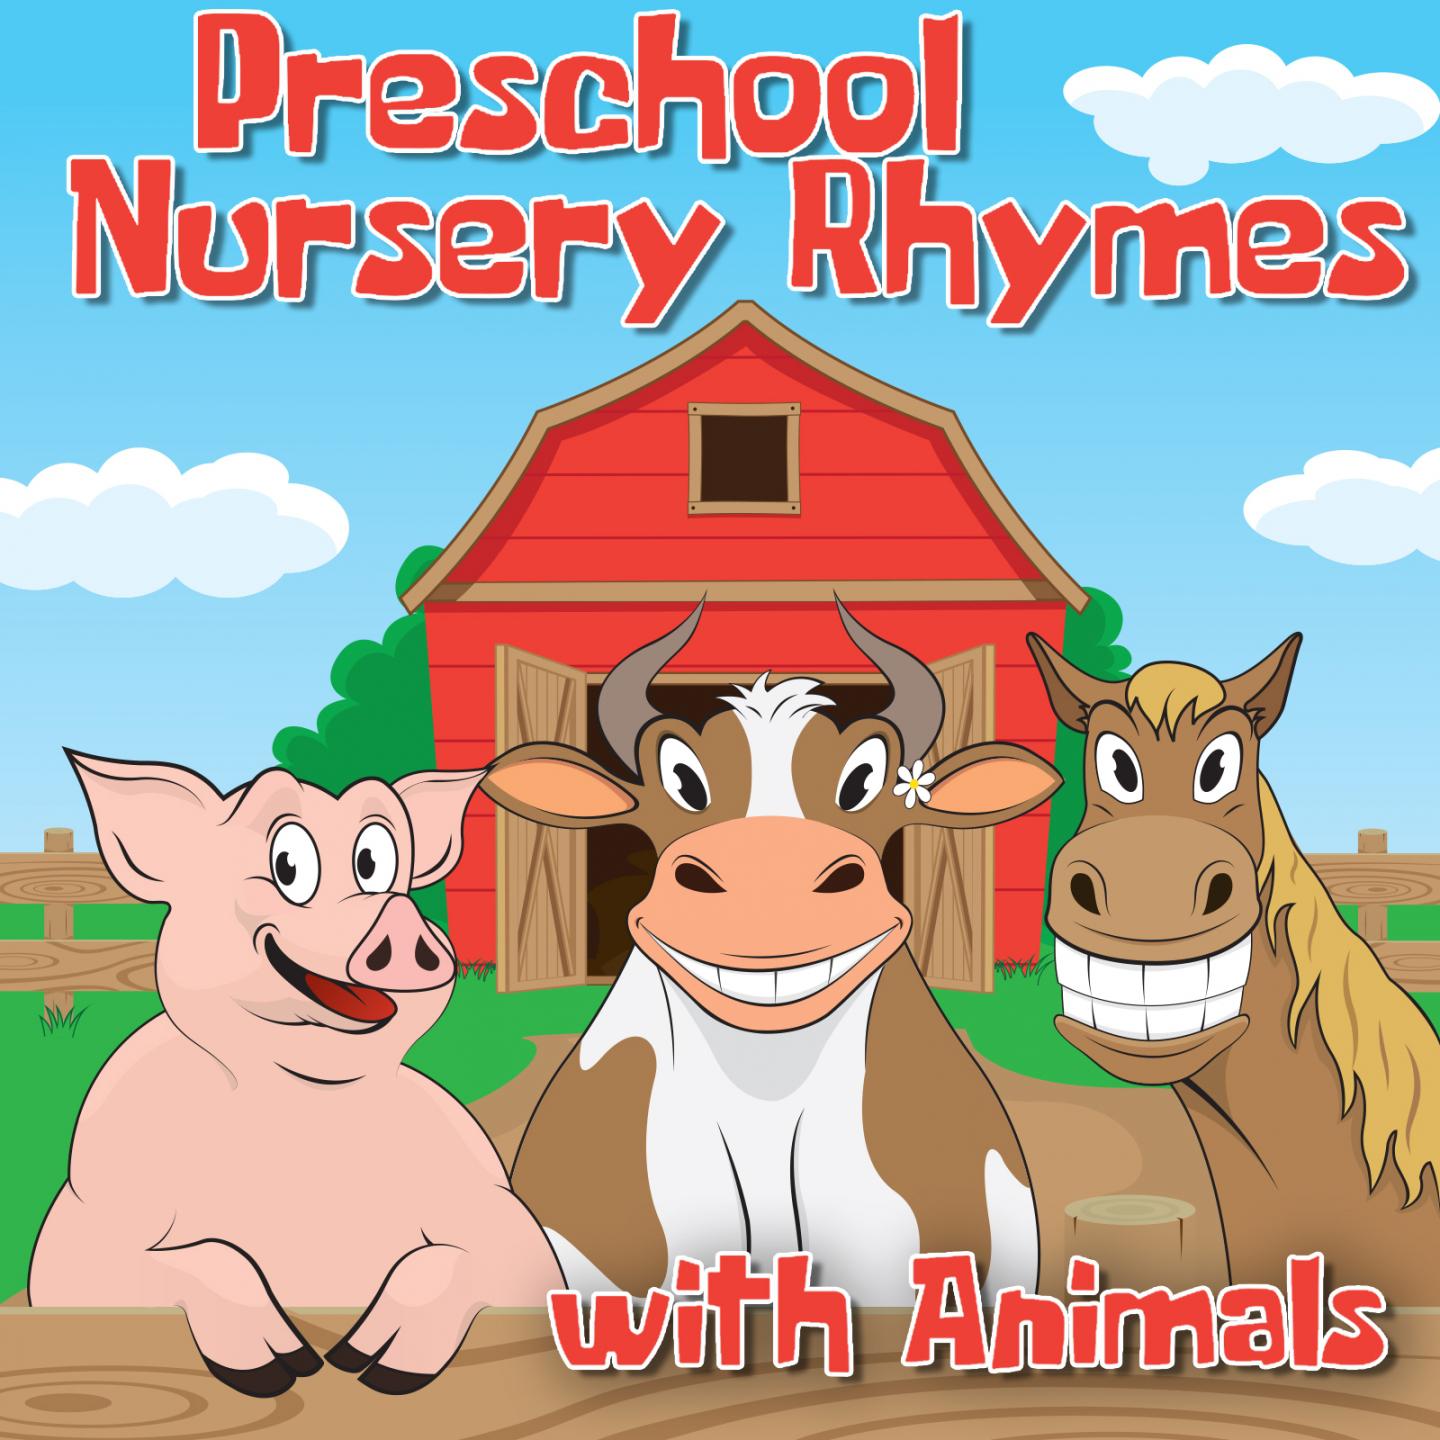 Preschool Nursery Rhymes with Animals